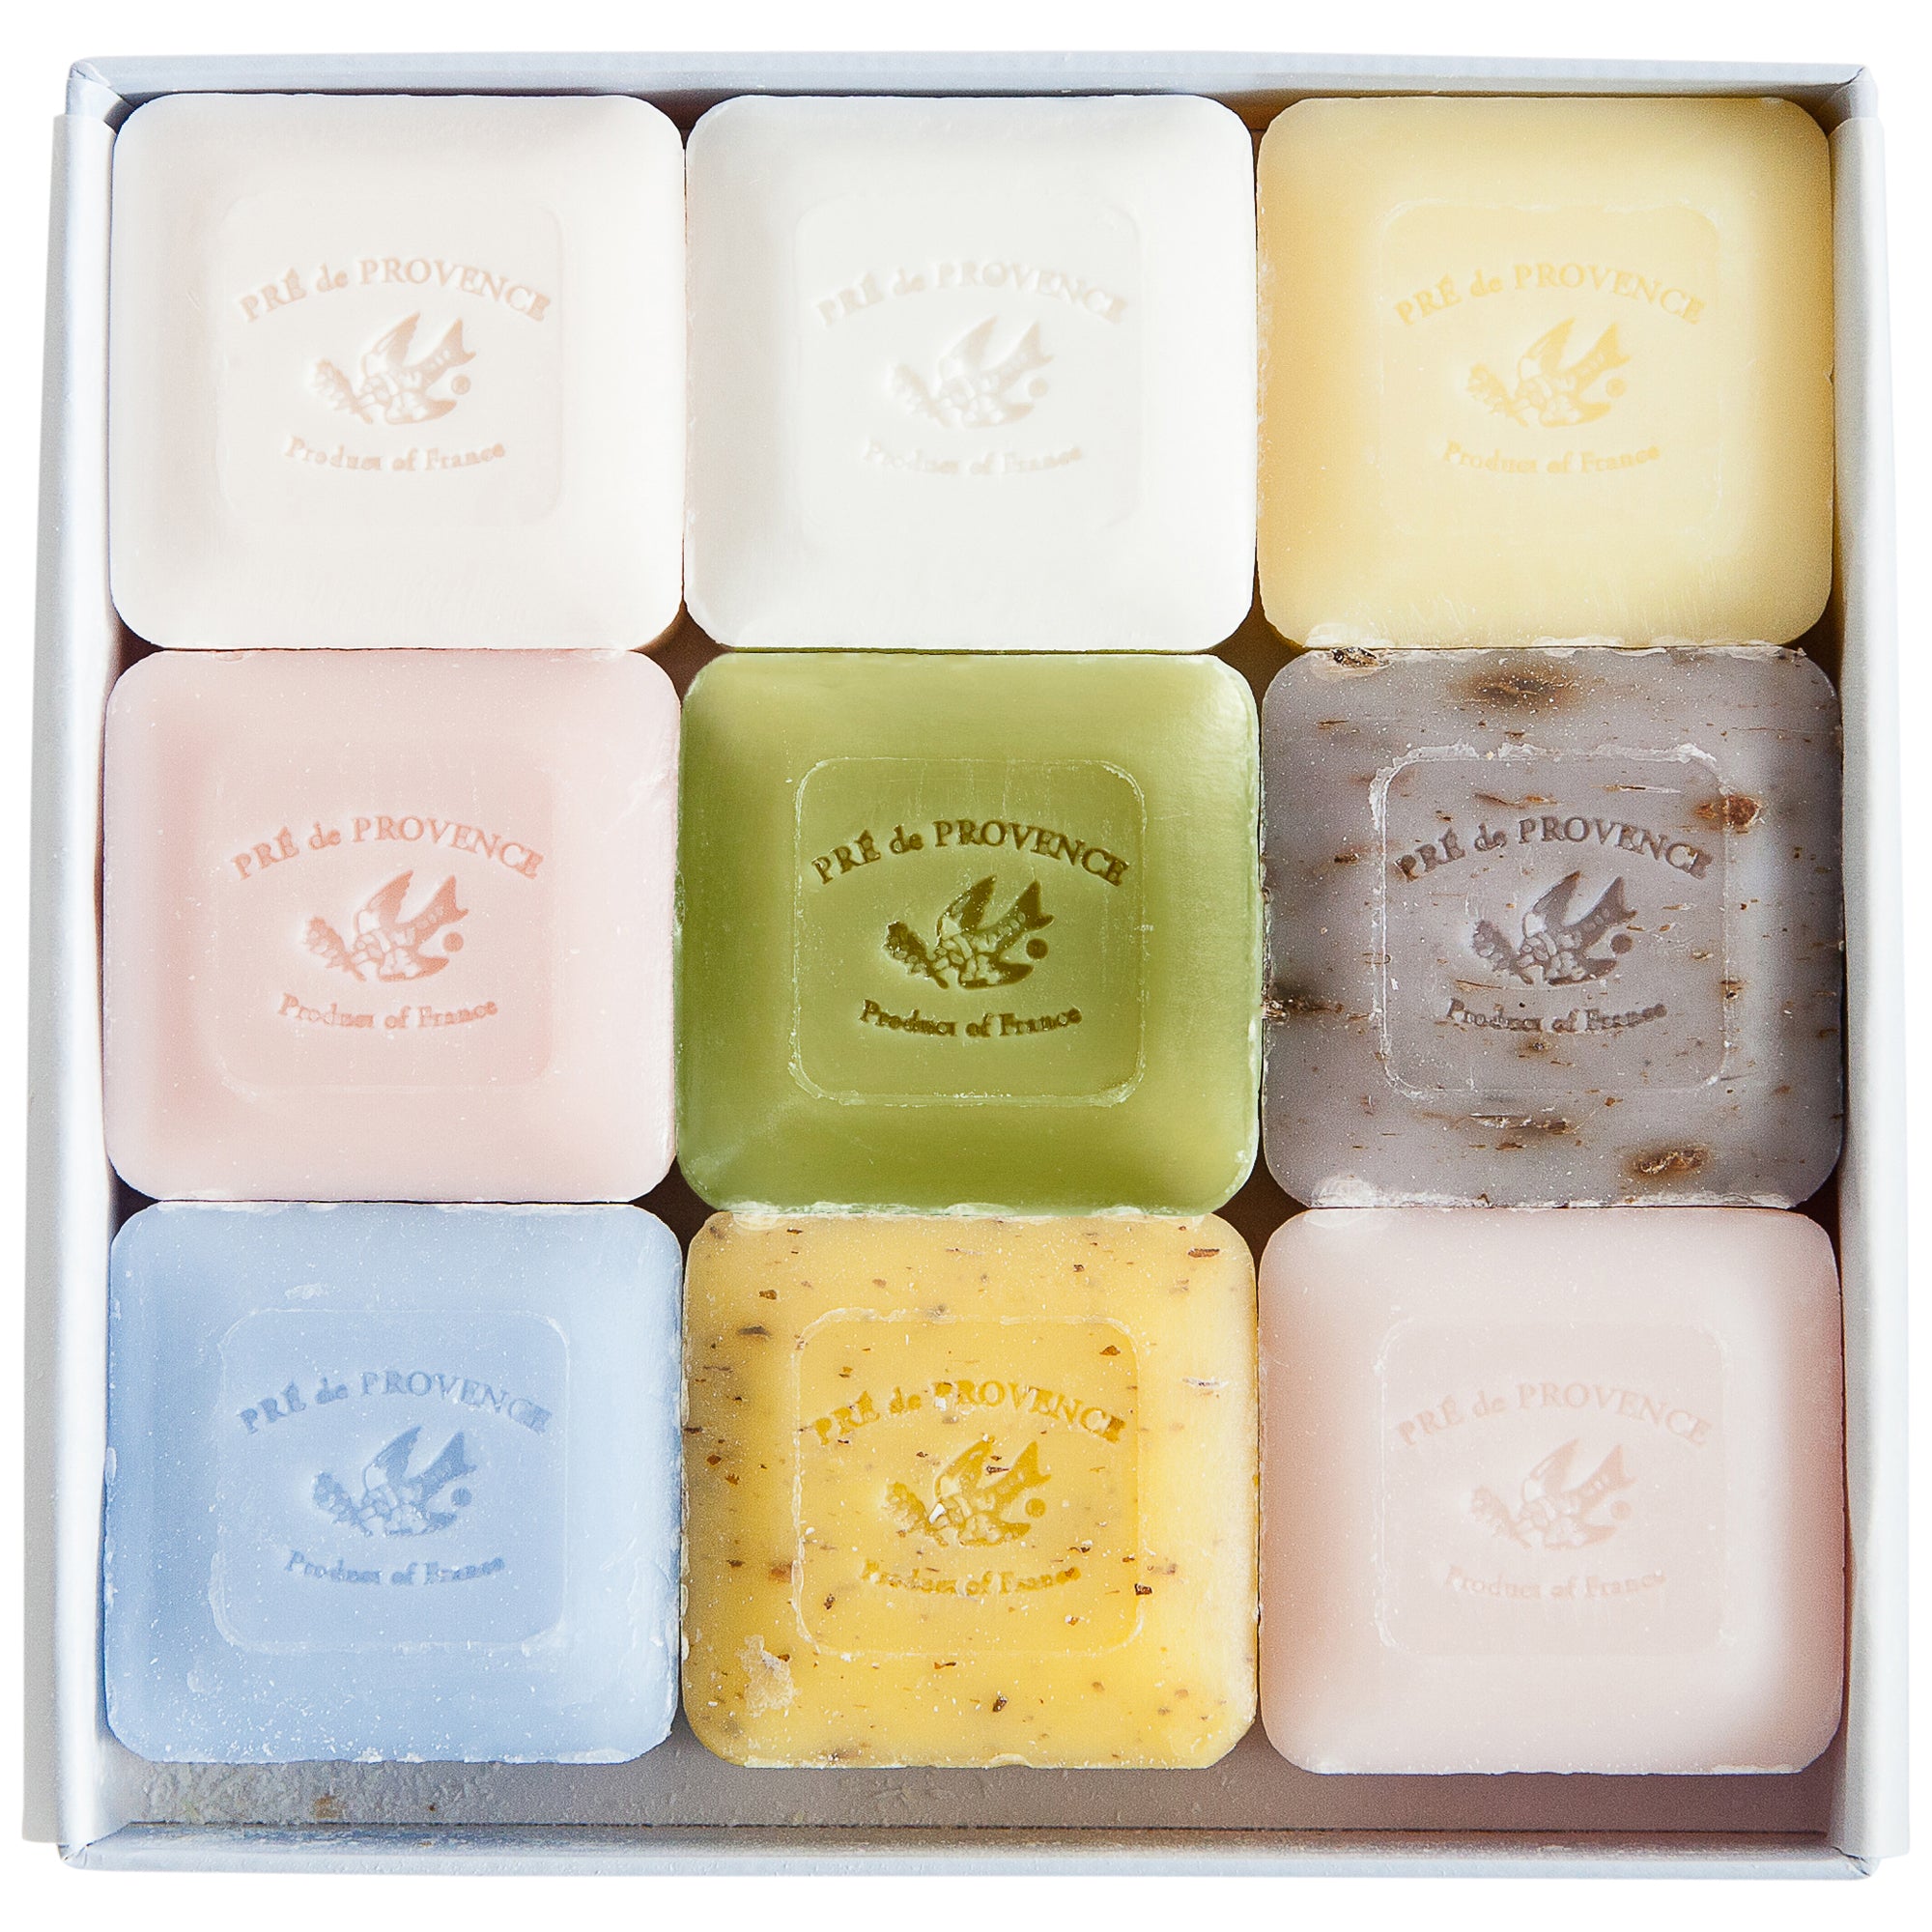 25g Luxury Soap Gift Set - WF, LV, ST, PO, TV, SS, LM, SW, LY – European  Soaps